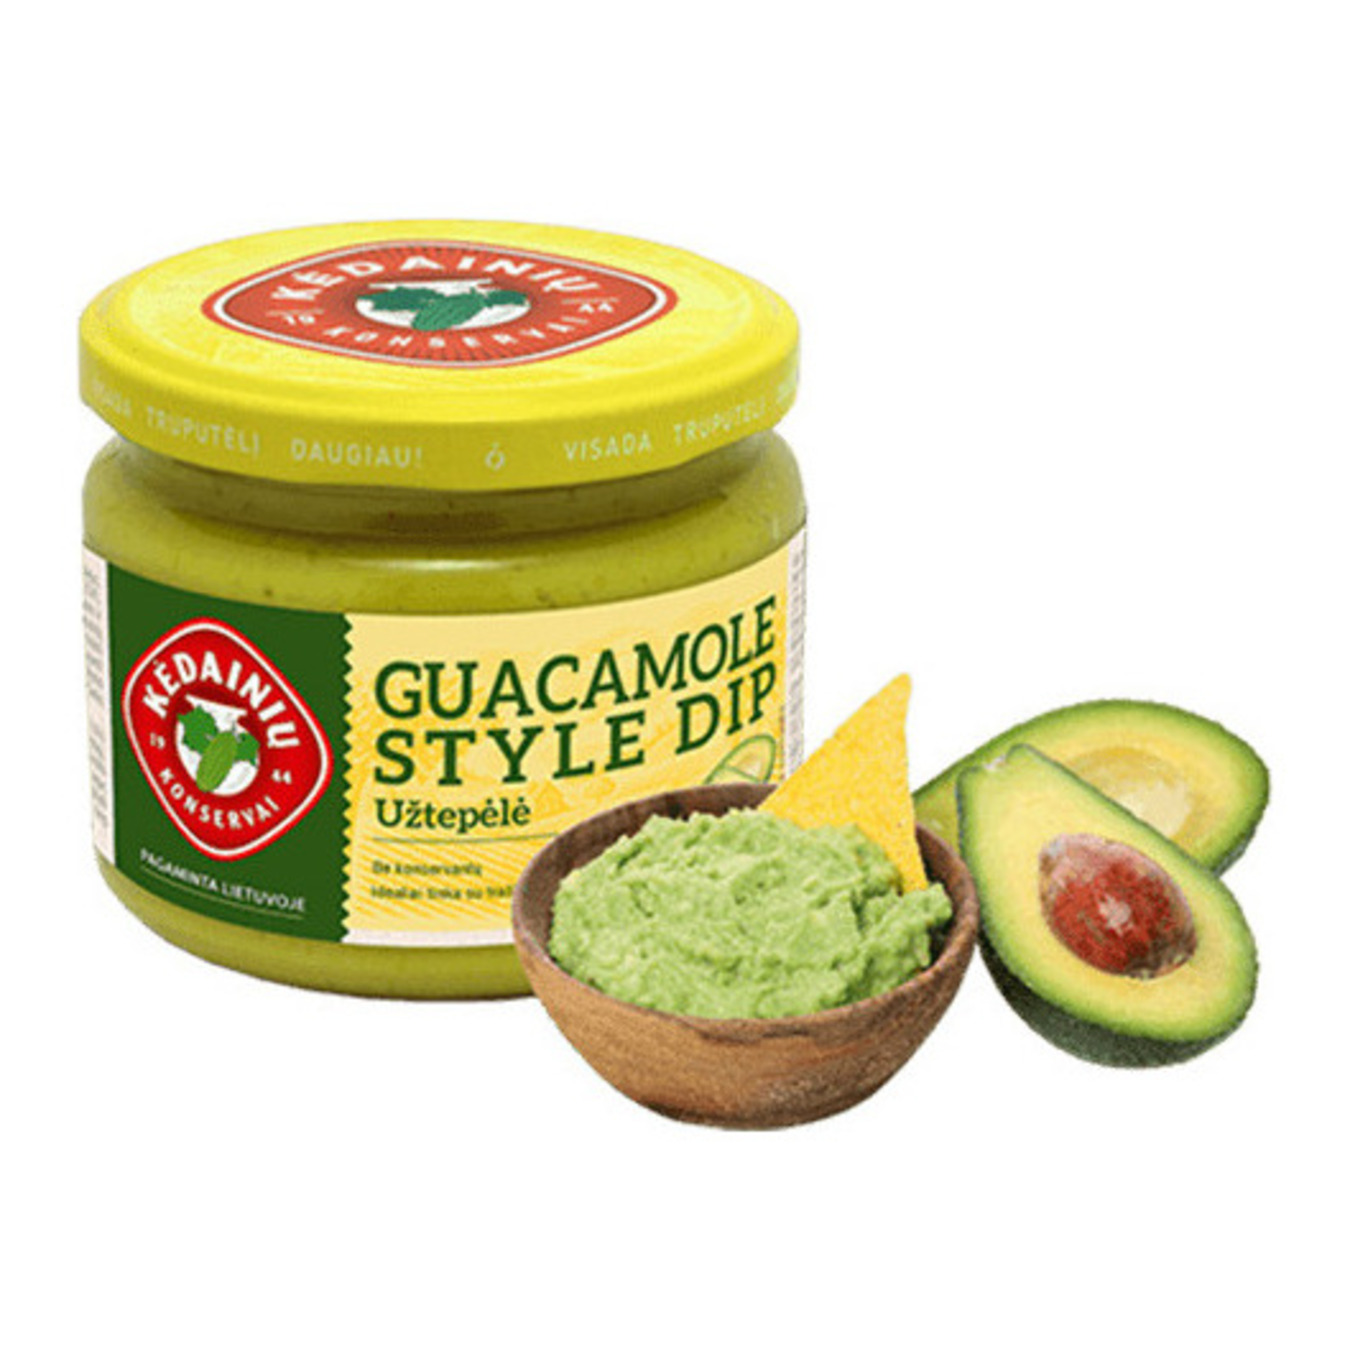 Dip sauce Kedainiu guacamole with avocado 280g